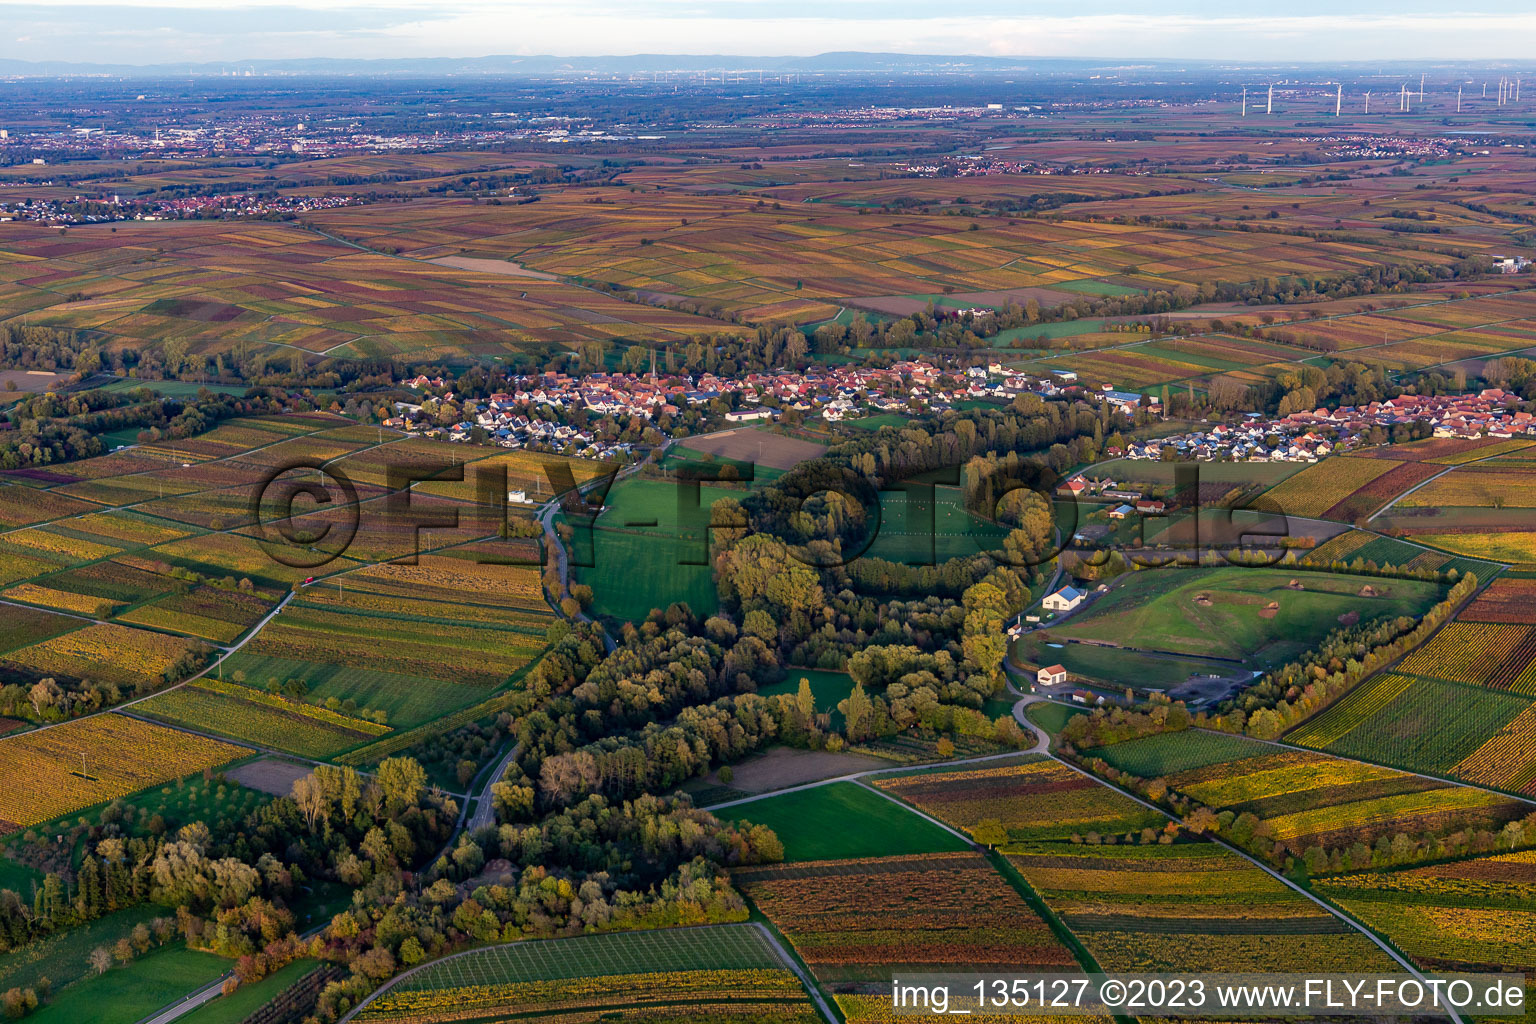 District Heuchelheim in Heuchelheim-Klingen in the state Rhineland-Palatinate, Germany seen from a drone